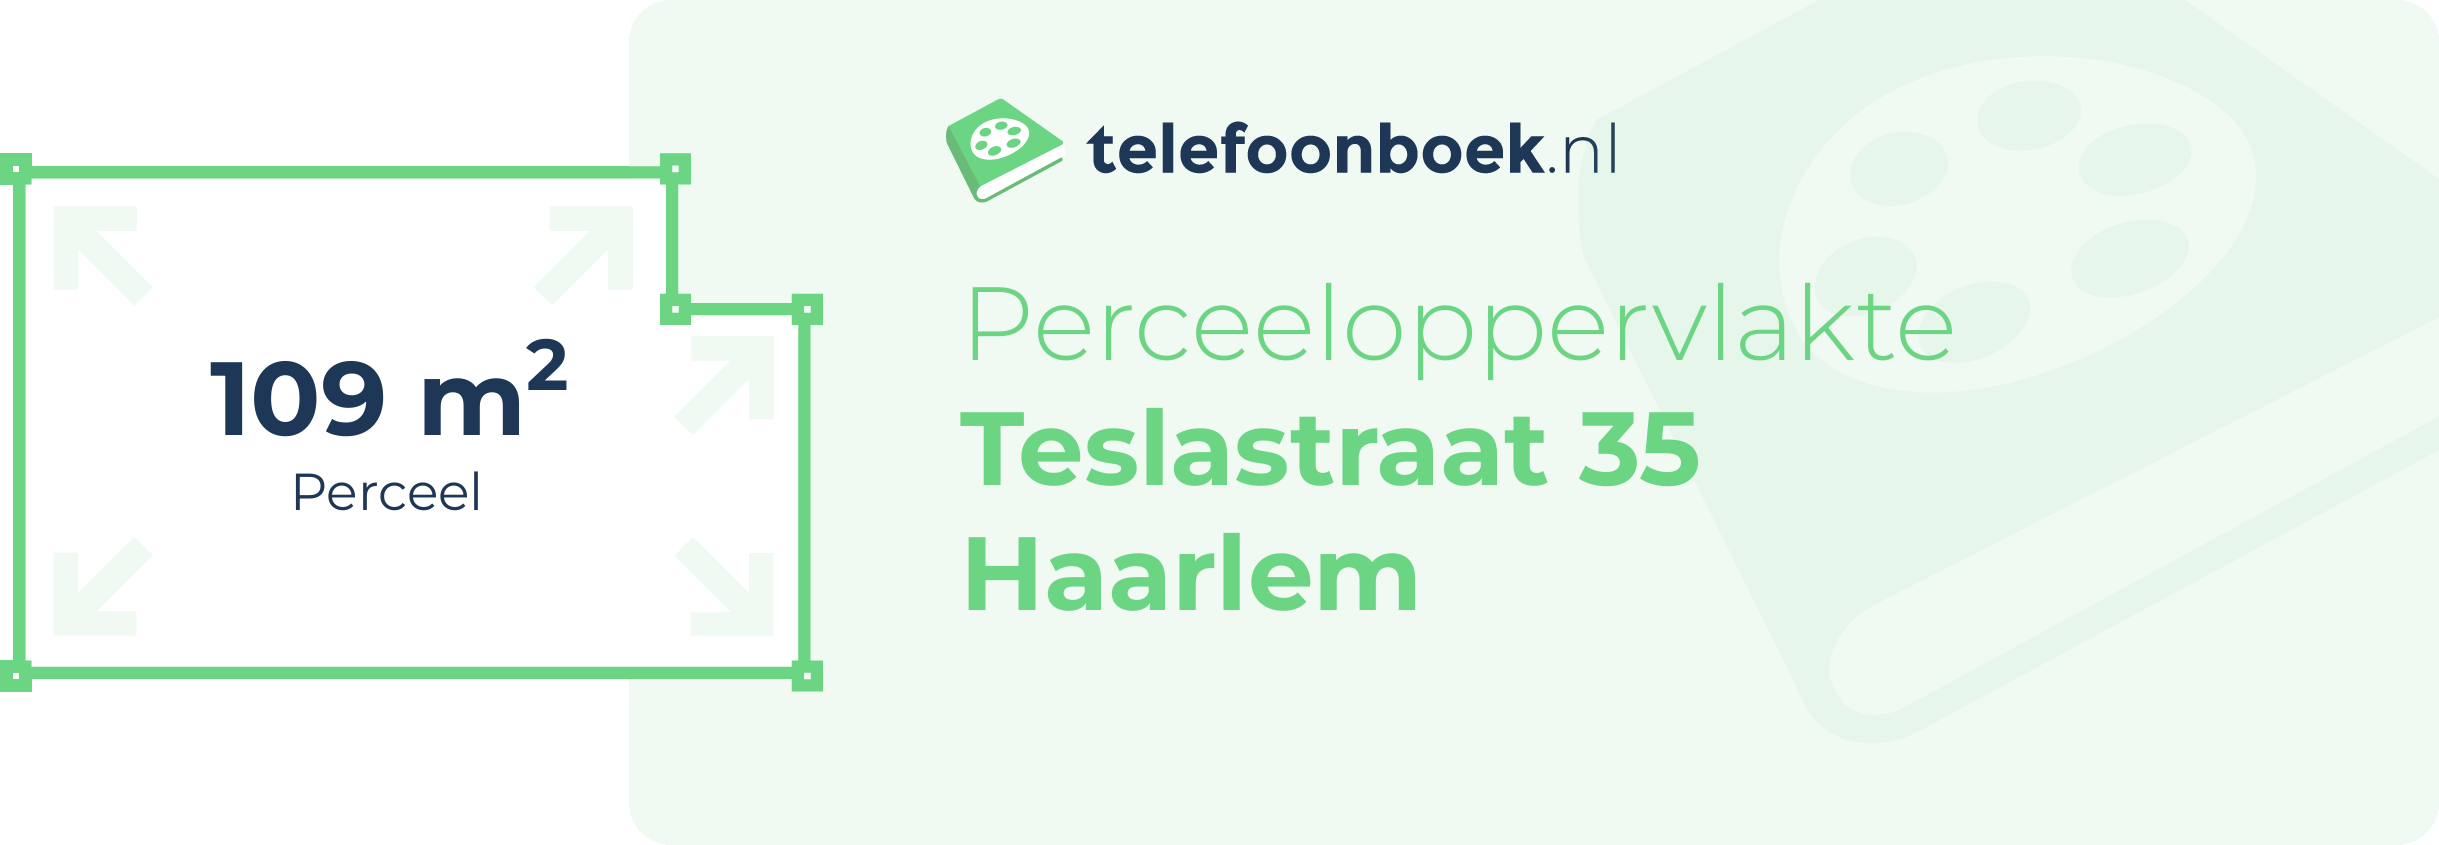 Perceeloppervlakte Teslastraat 35 Haarlem